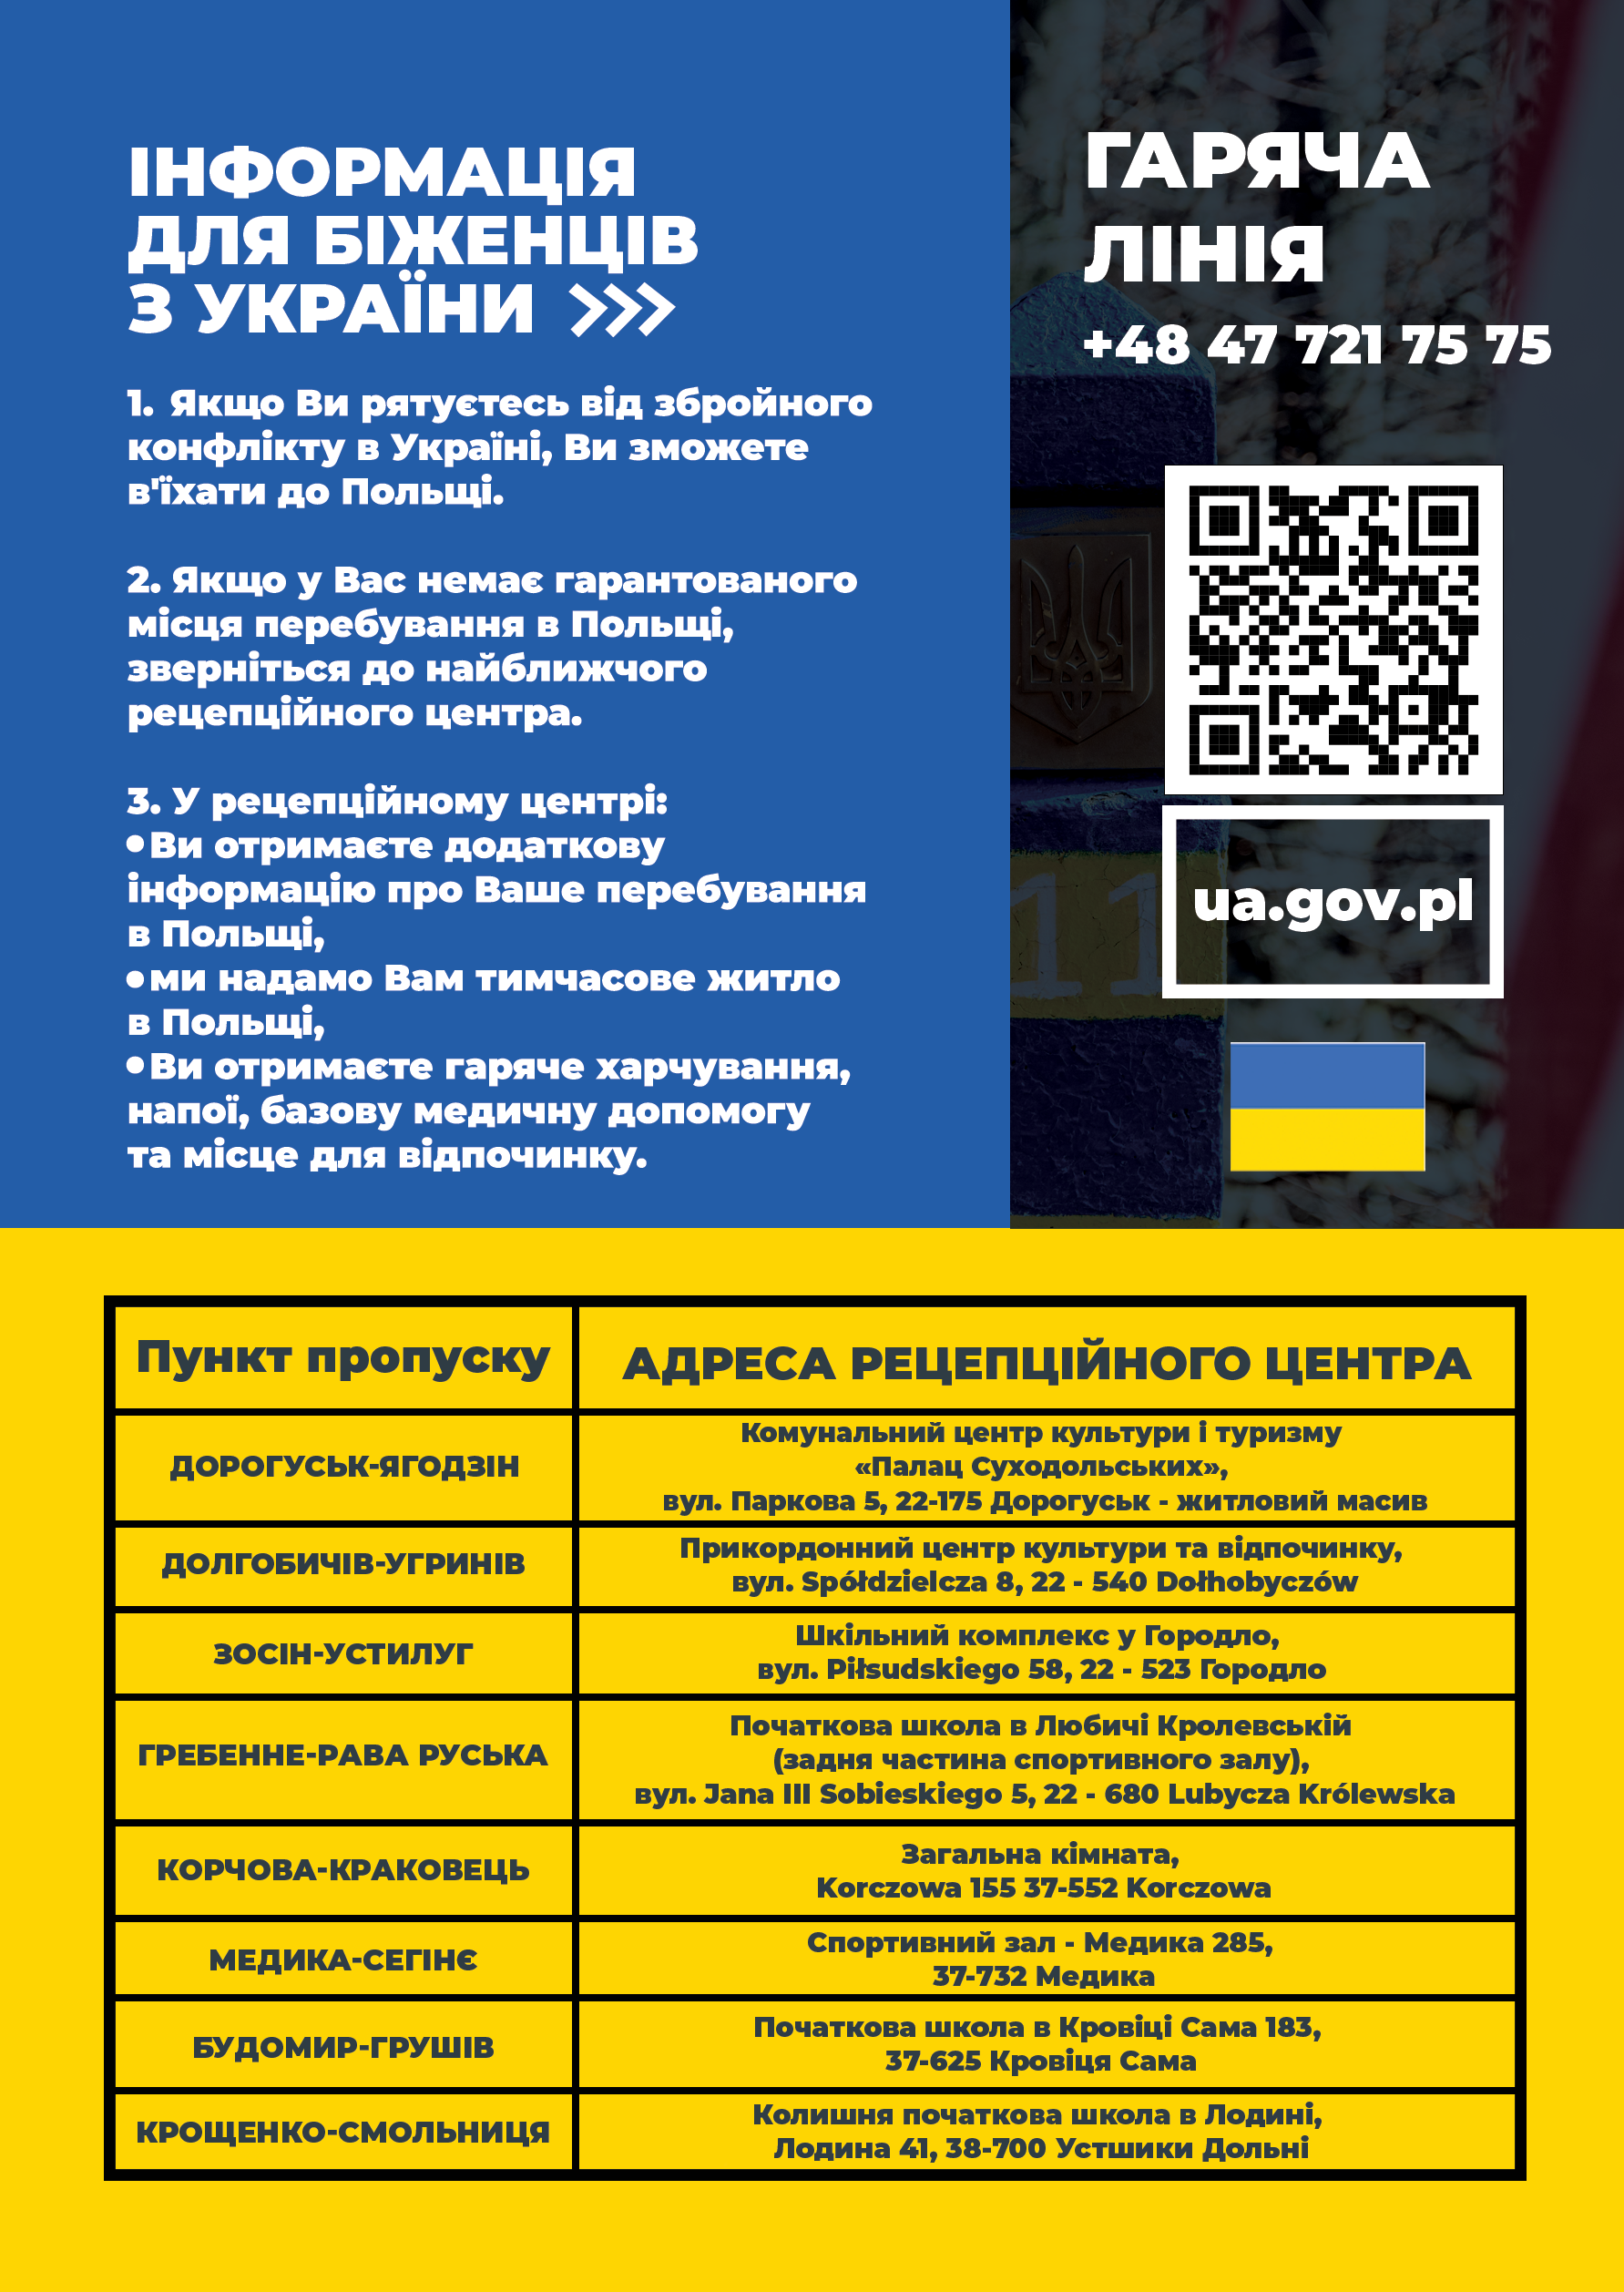 Plakat w języku ukraińskim